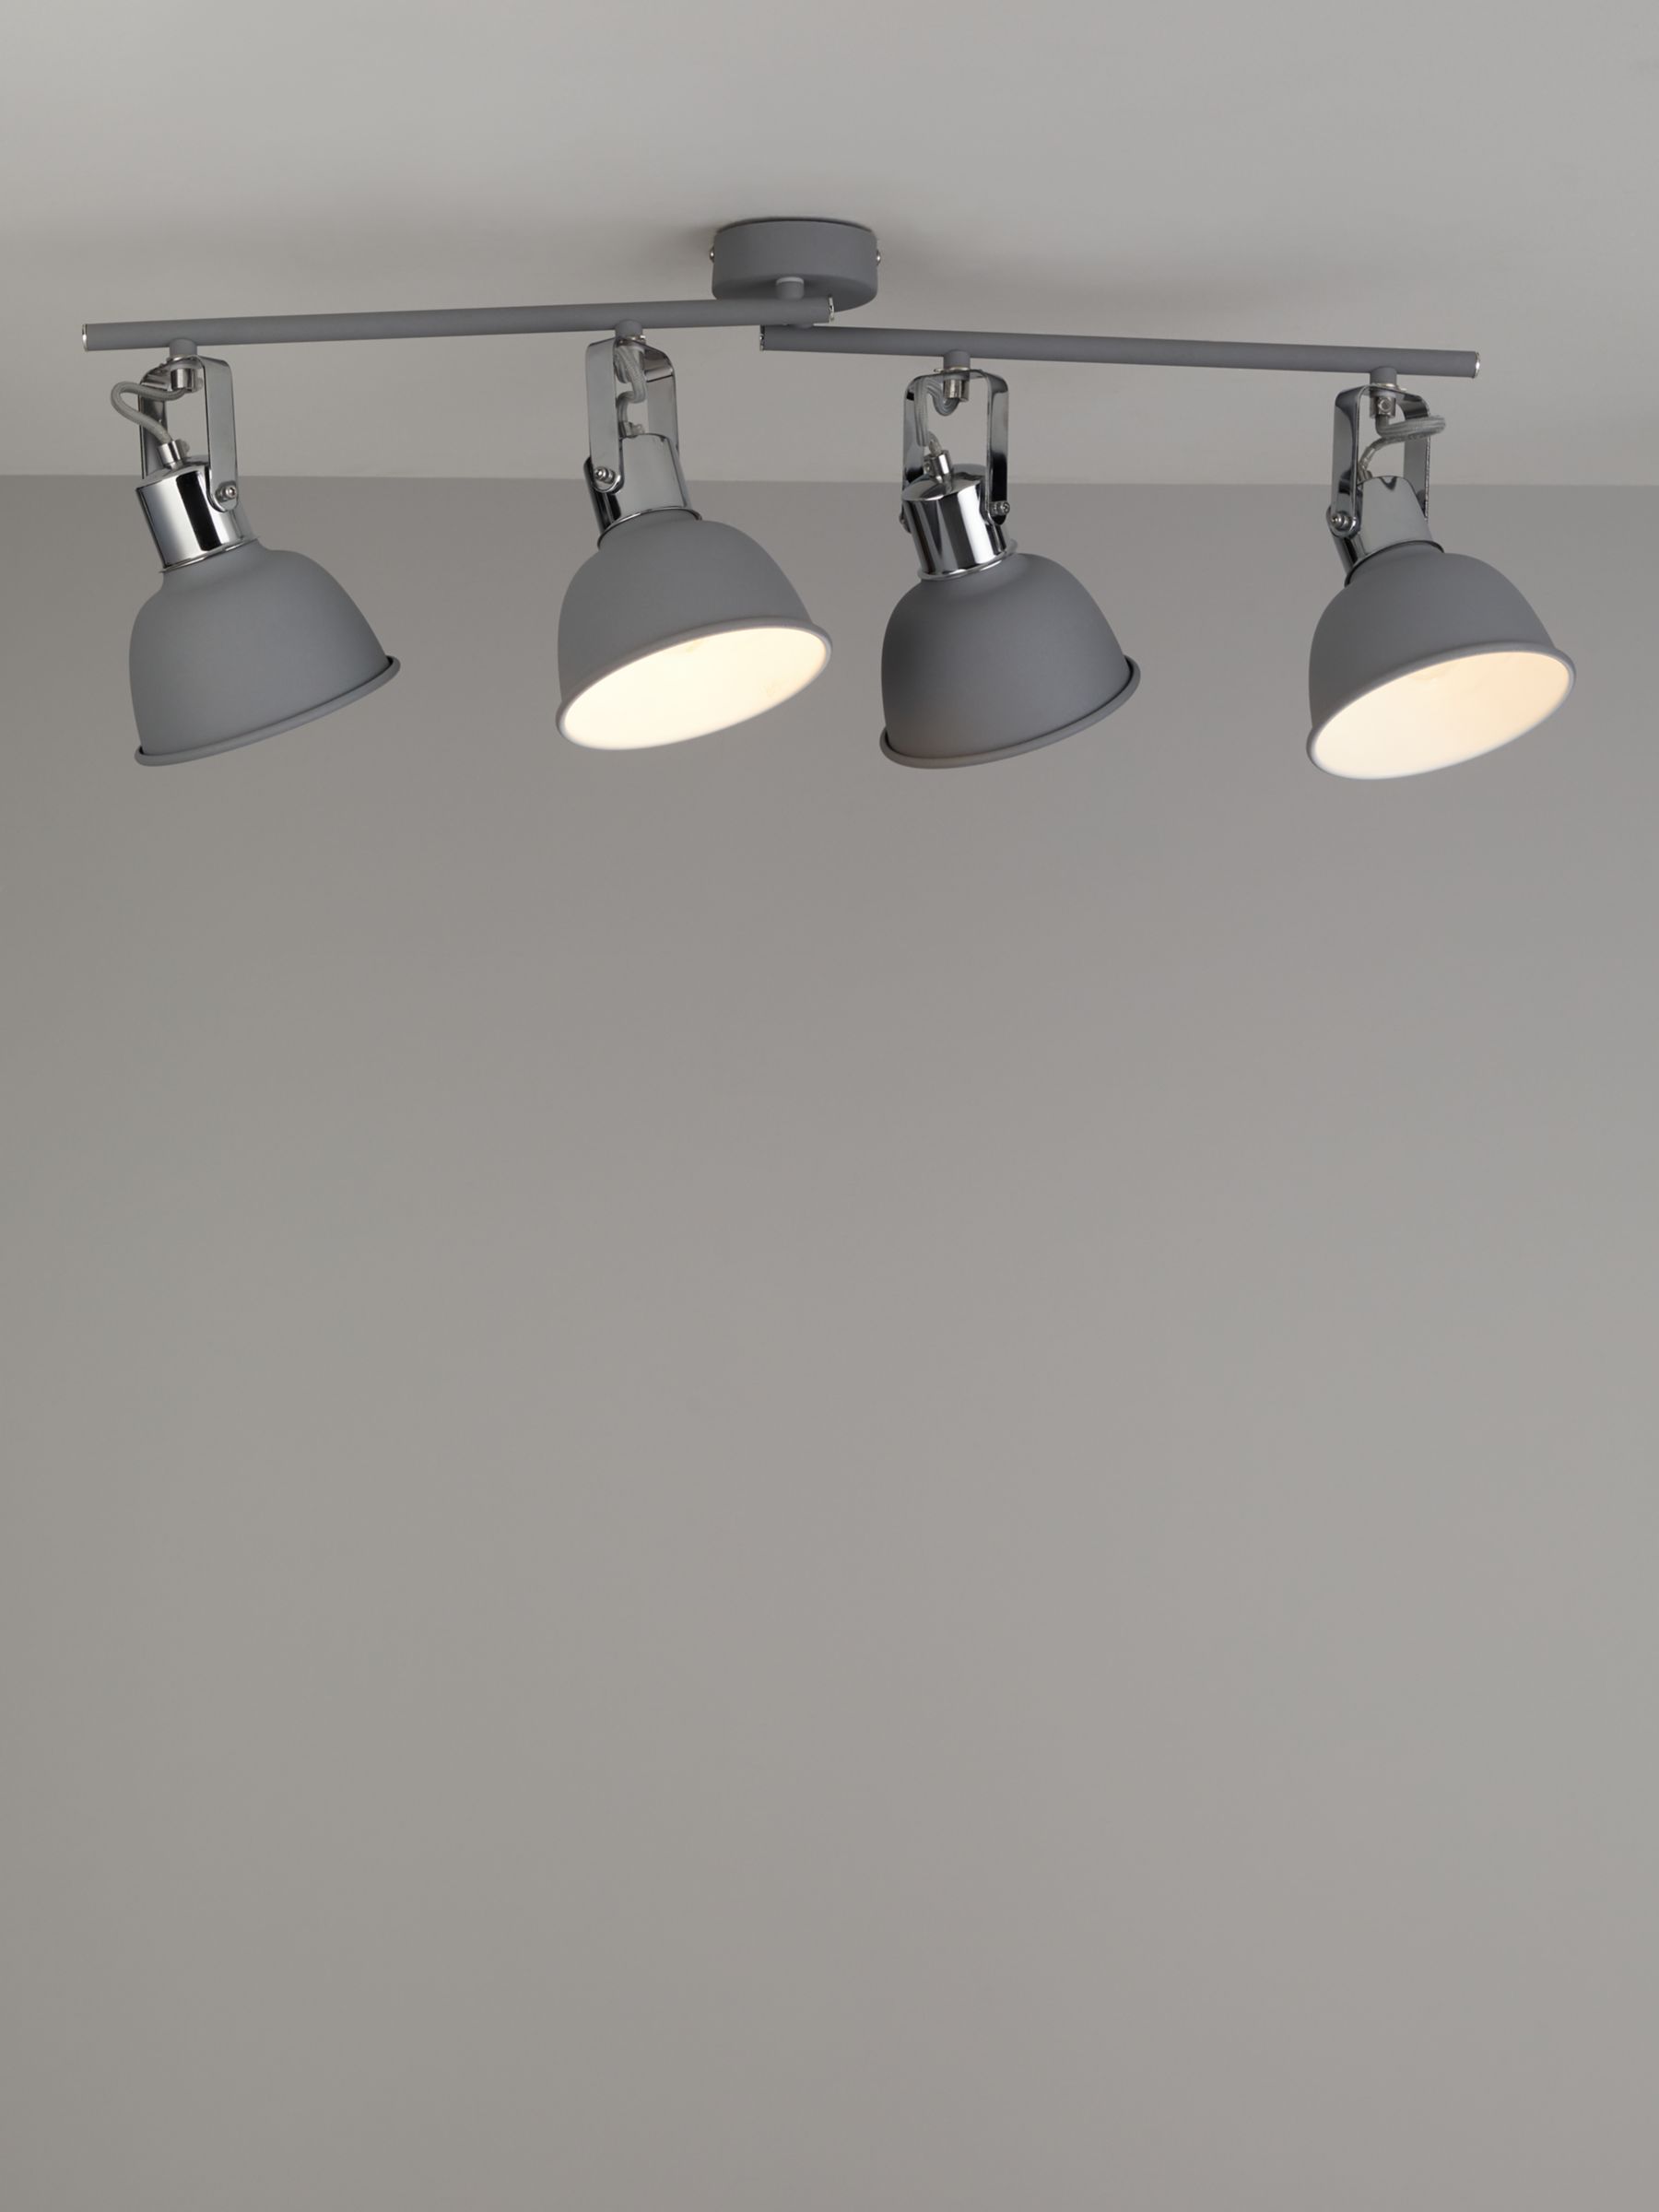 sarcoom Krijt Bedankt John Lewis SES LED 4 Spotlight Ceiling Bar, Grey